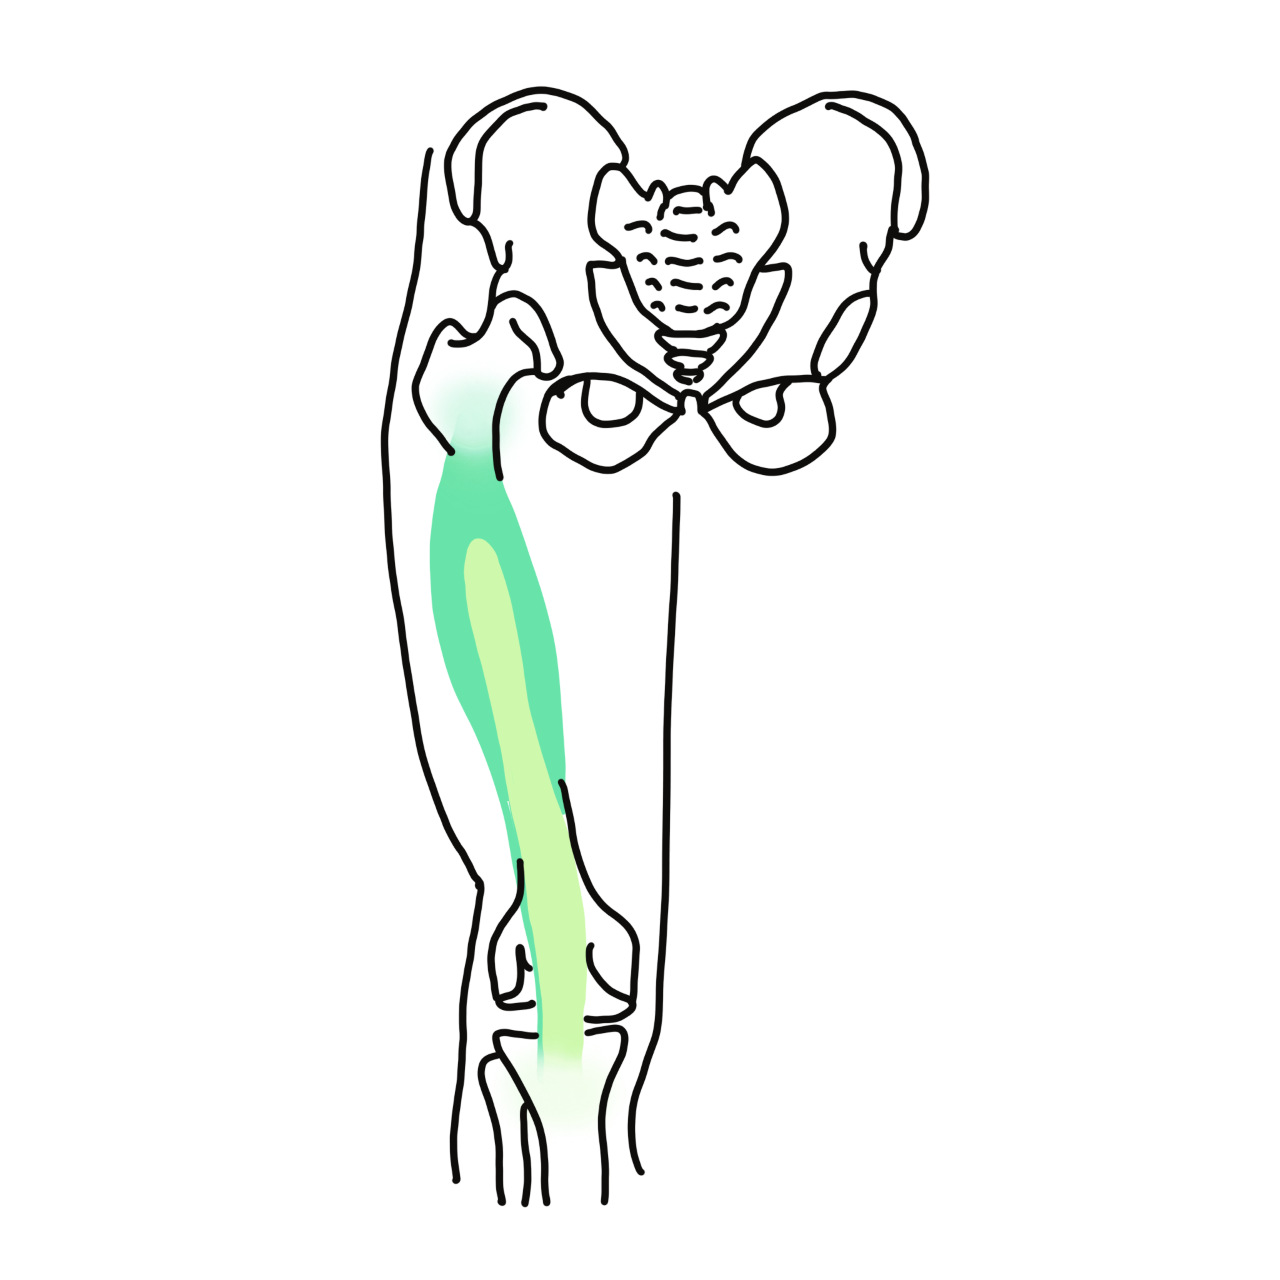 Vastus intermedius muscle in knee joint